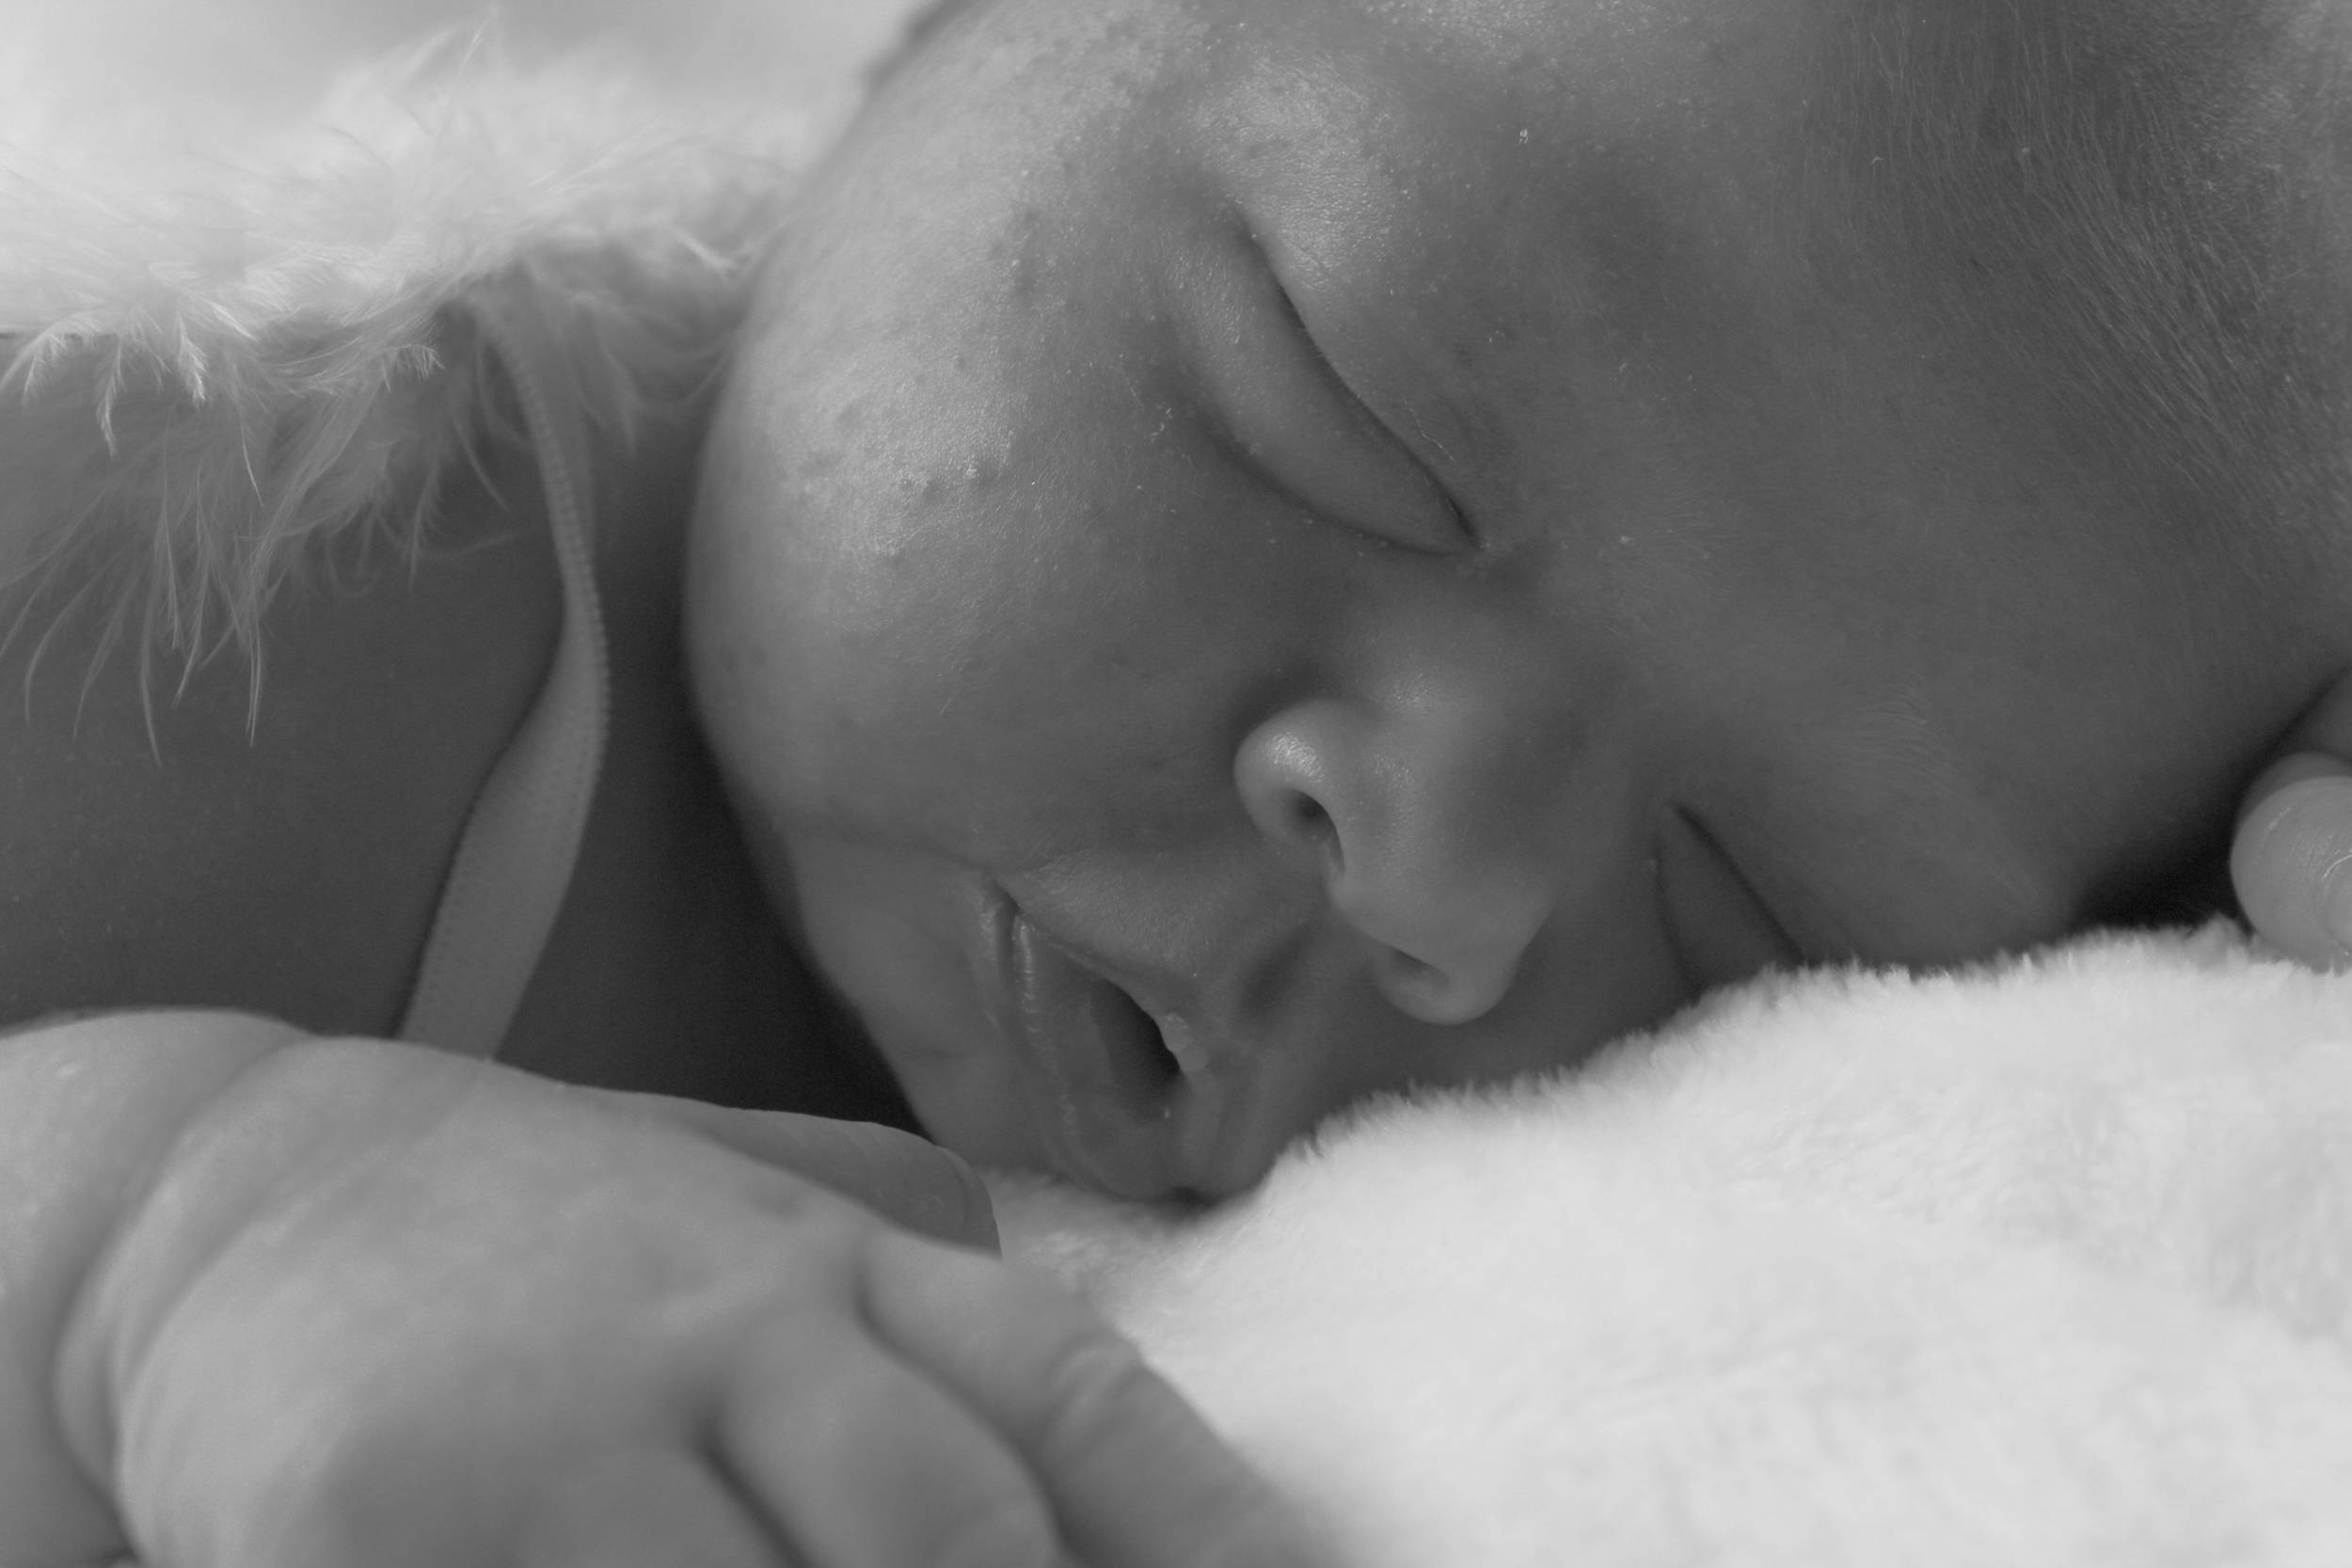 Happix-fotograaf-Nathalie-Joan-Veenendaal-Newborn-_-Baby-fotografie-072_8MiHoHtl1MK.jpg